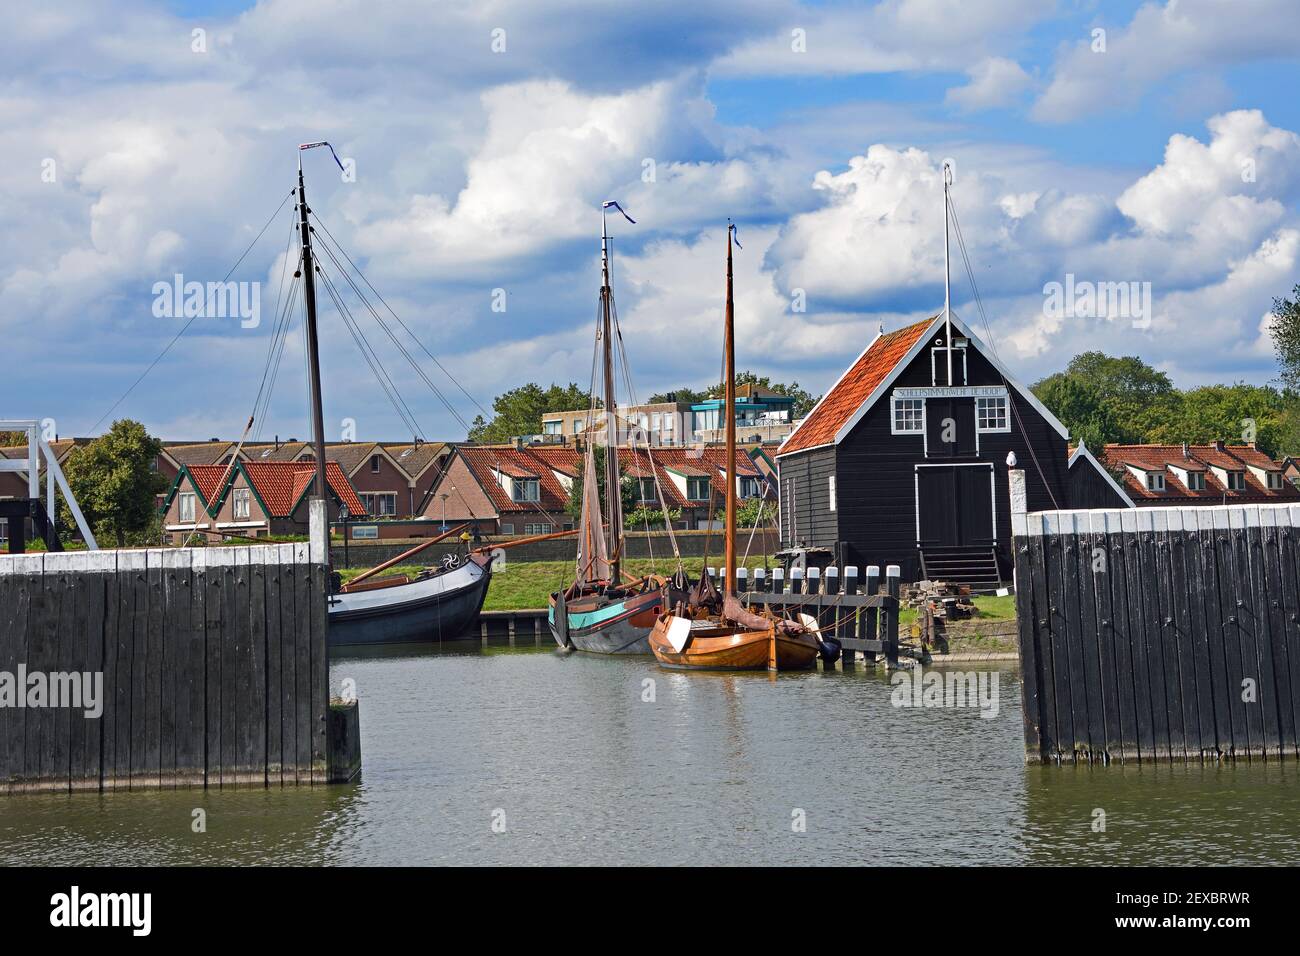 Das Zuiderzee-Museum befindet sich auf Wiedijk im historischen Zentrum von Enkhuizen und ist ein niederländisches Museum, das sich der Erhaltung des kulturellen Erbes und der maritimen Geschichte der alten Zuiderzee-Region widmet. Niederlande, Niederlande, Nord, Noord, Holland. Stockfoto